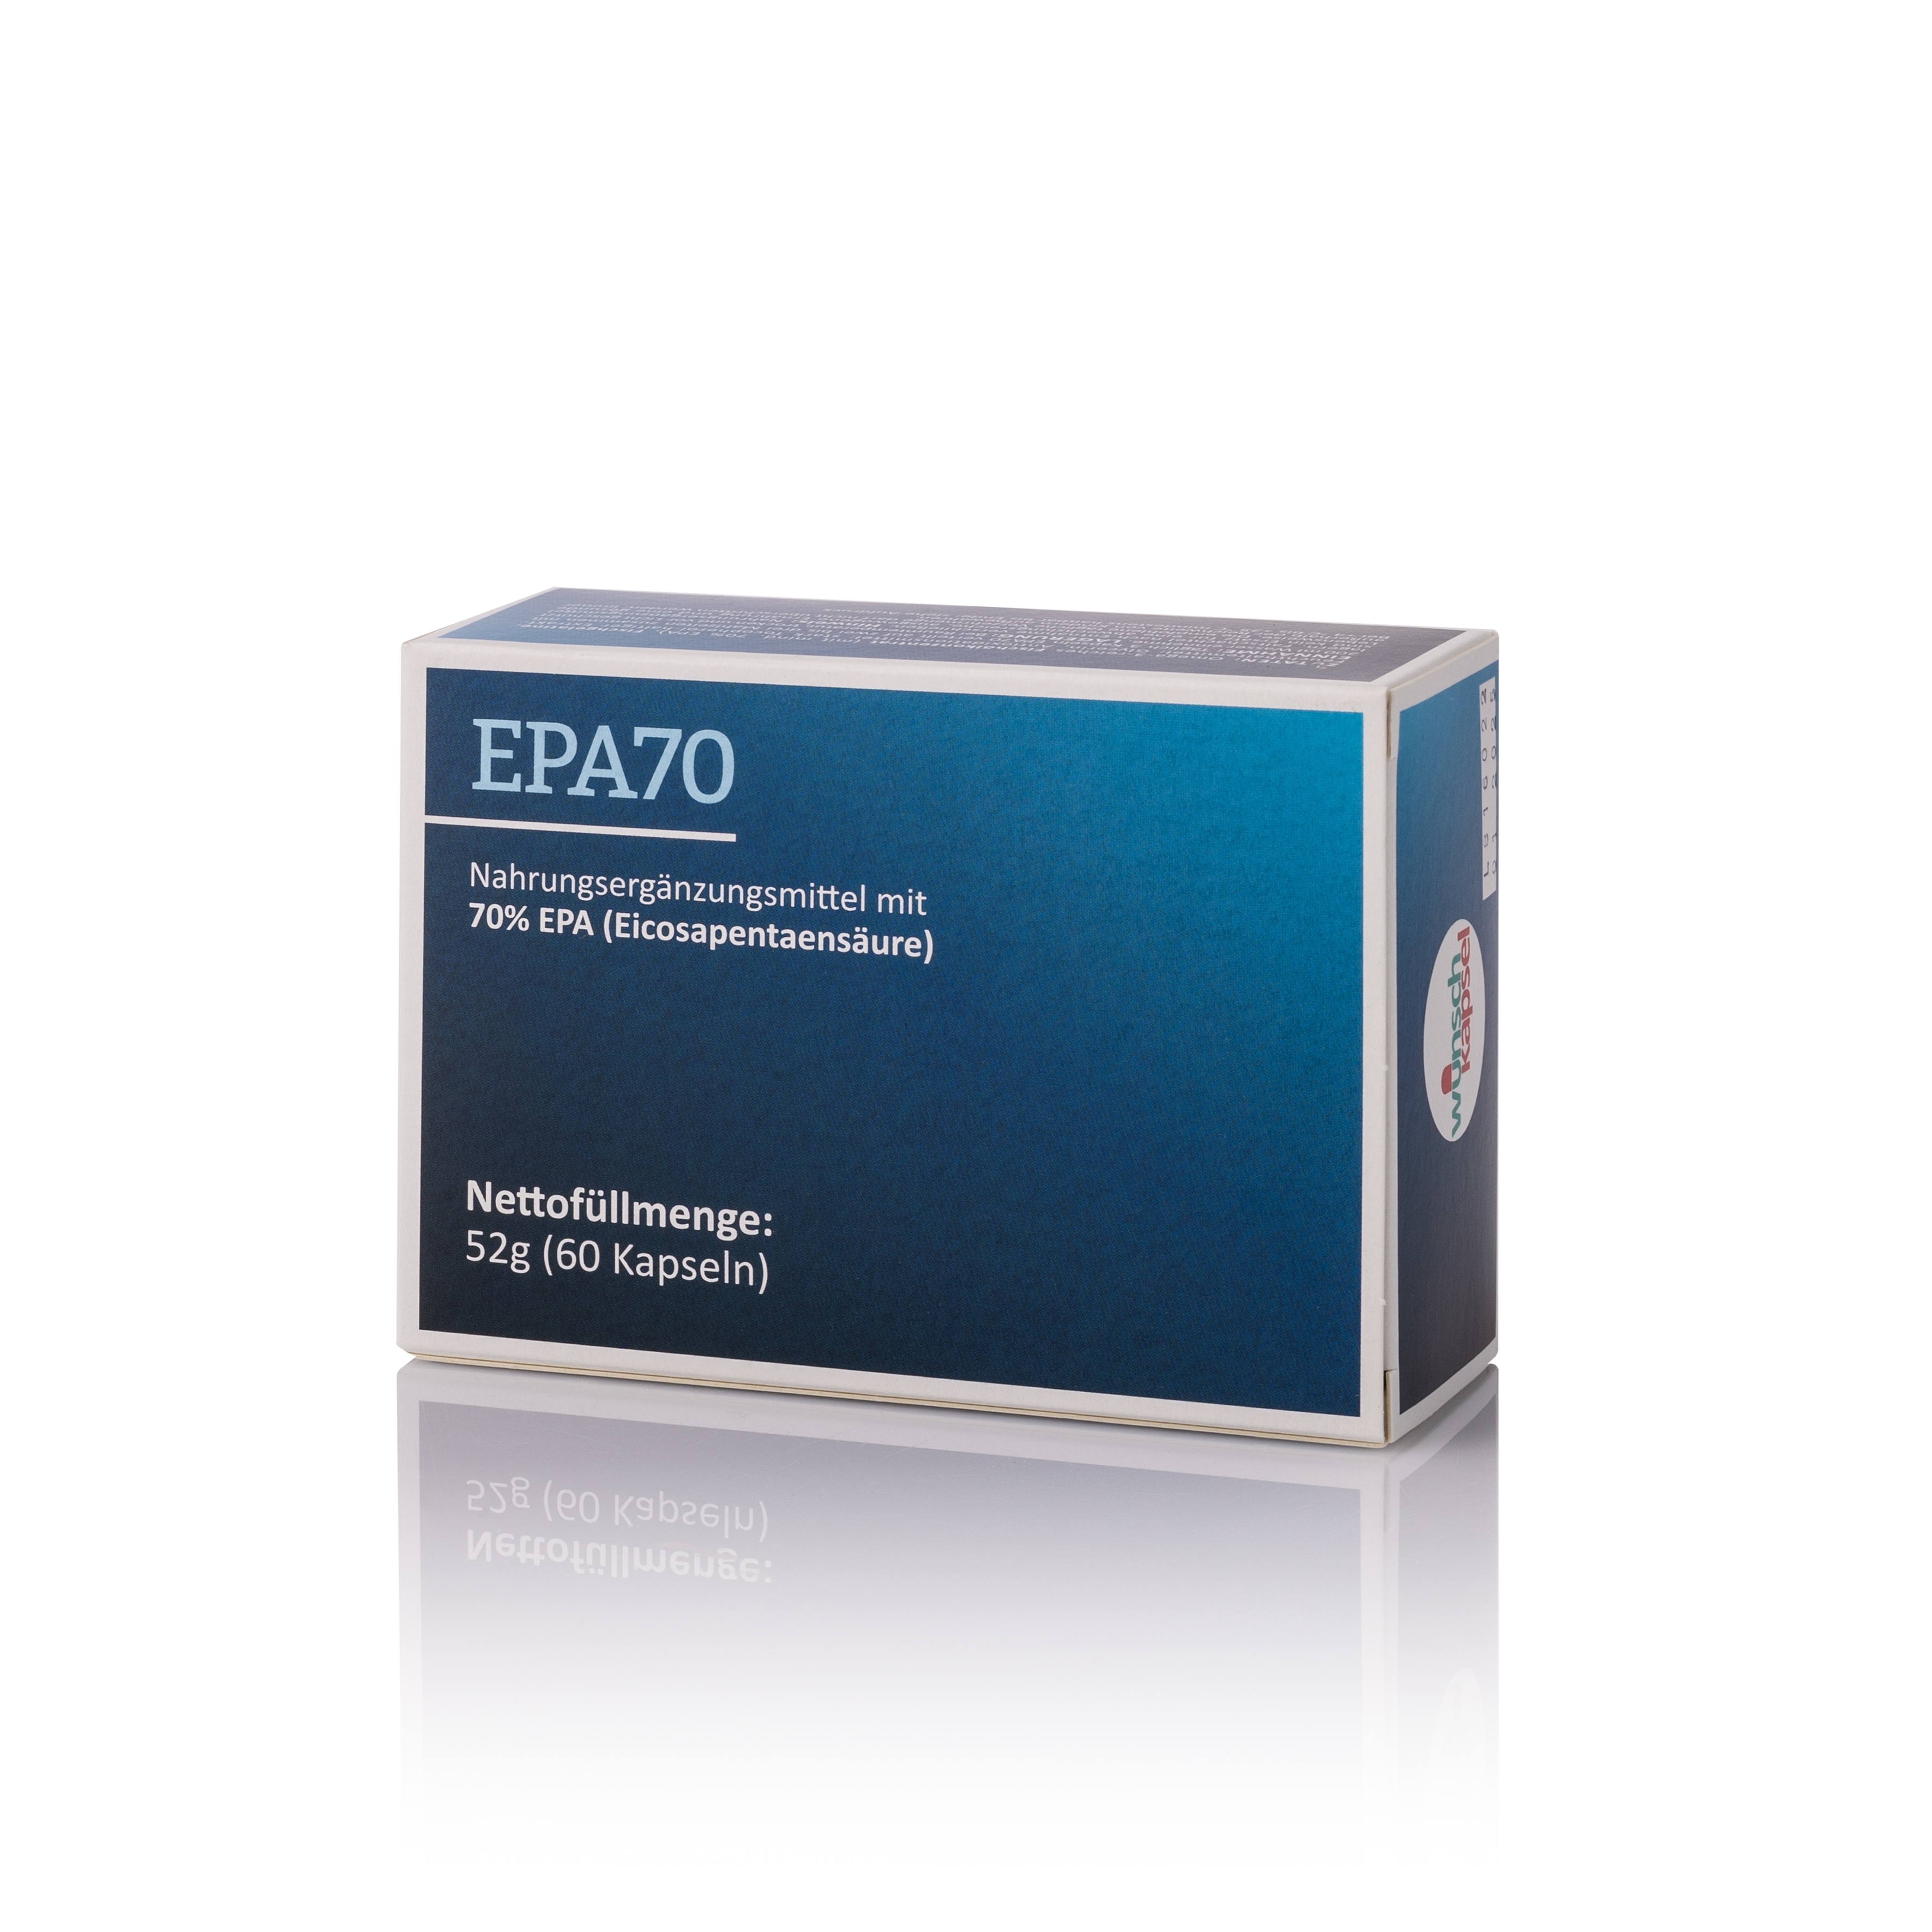 EPA70 (70% EPA, 500 mg pro Kapsel)